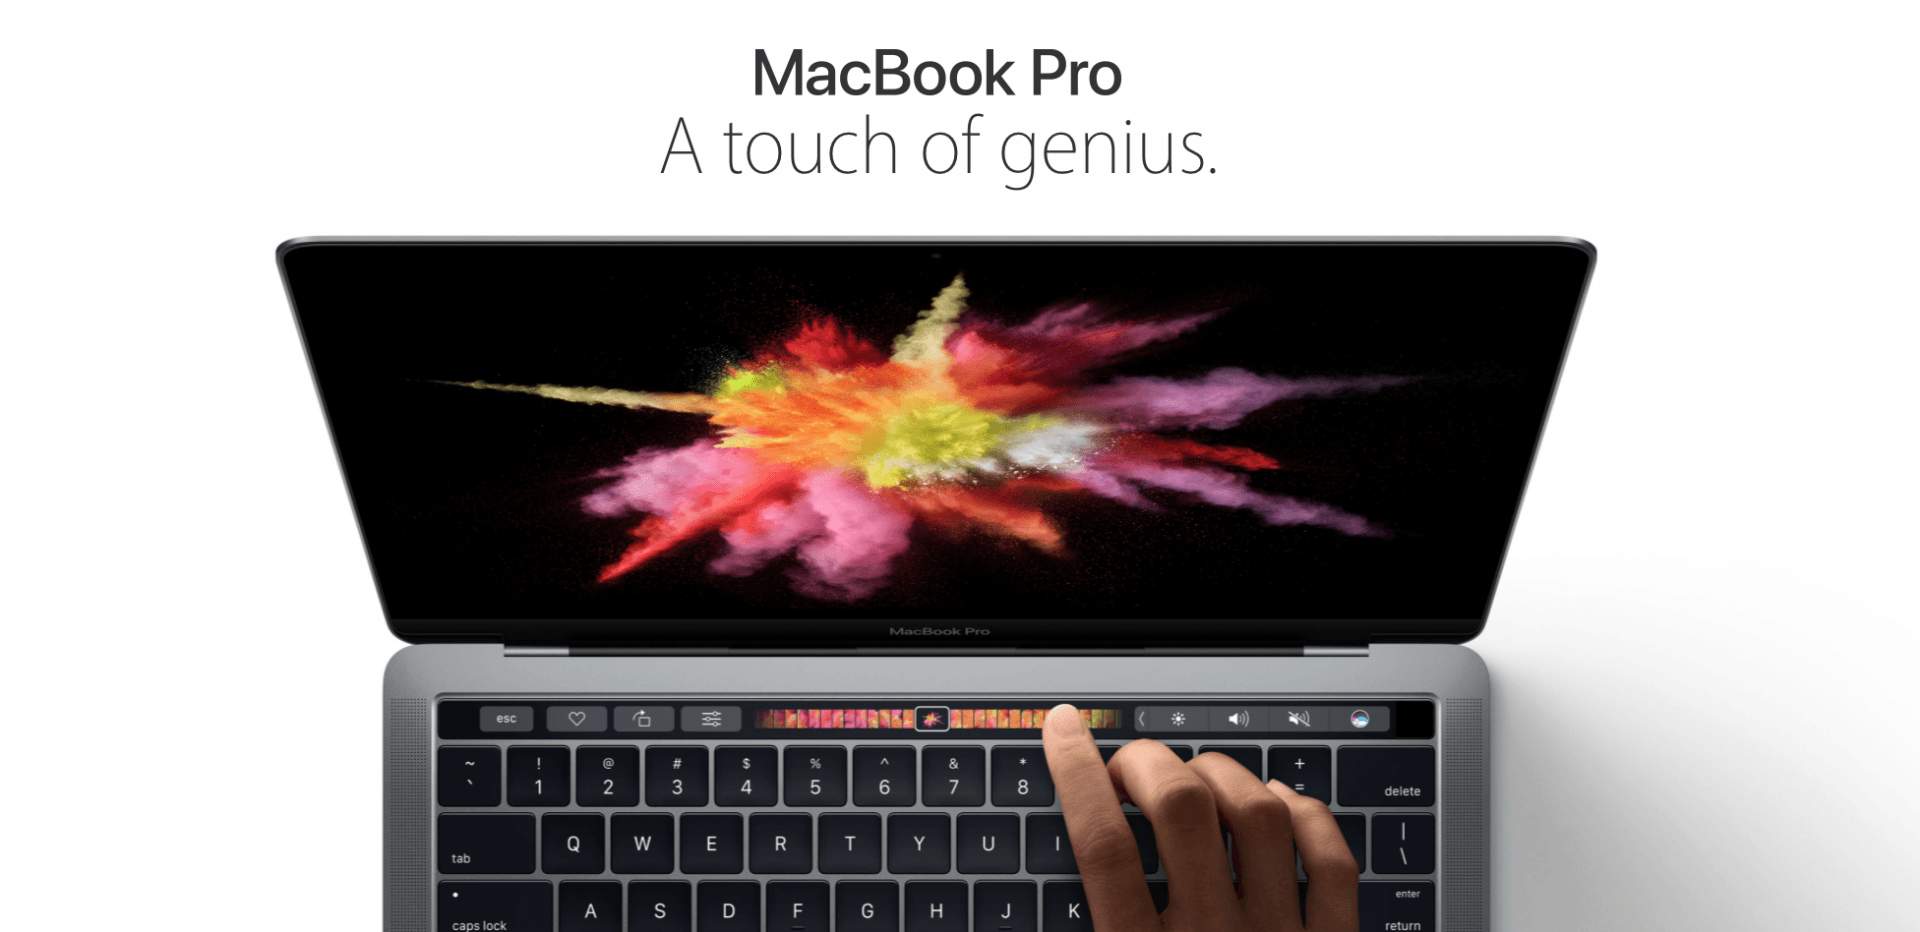 อย่าเพิ่งซื้อถ้าไม่รีบ! Apple อาจลดราคา MacBook Pro รุ่นใหม่พร้อมเพิ่มตัวเลือก RAM 32GB